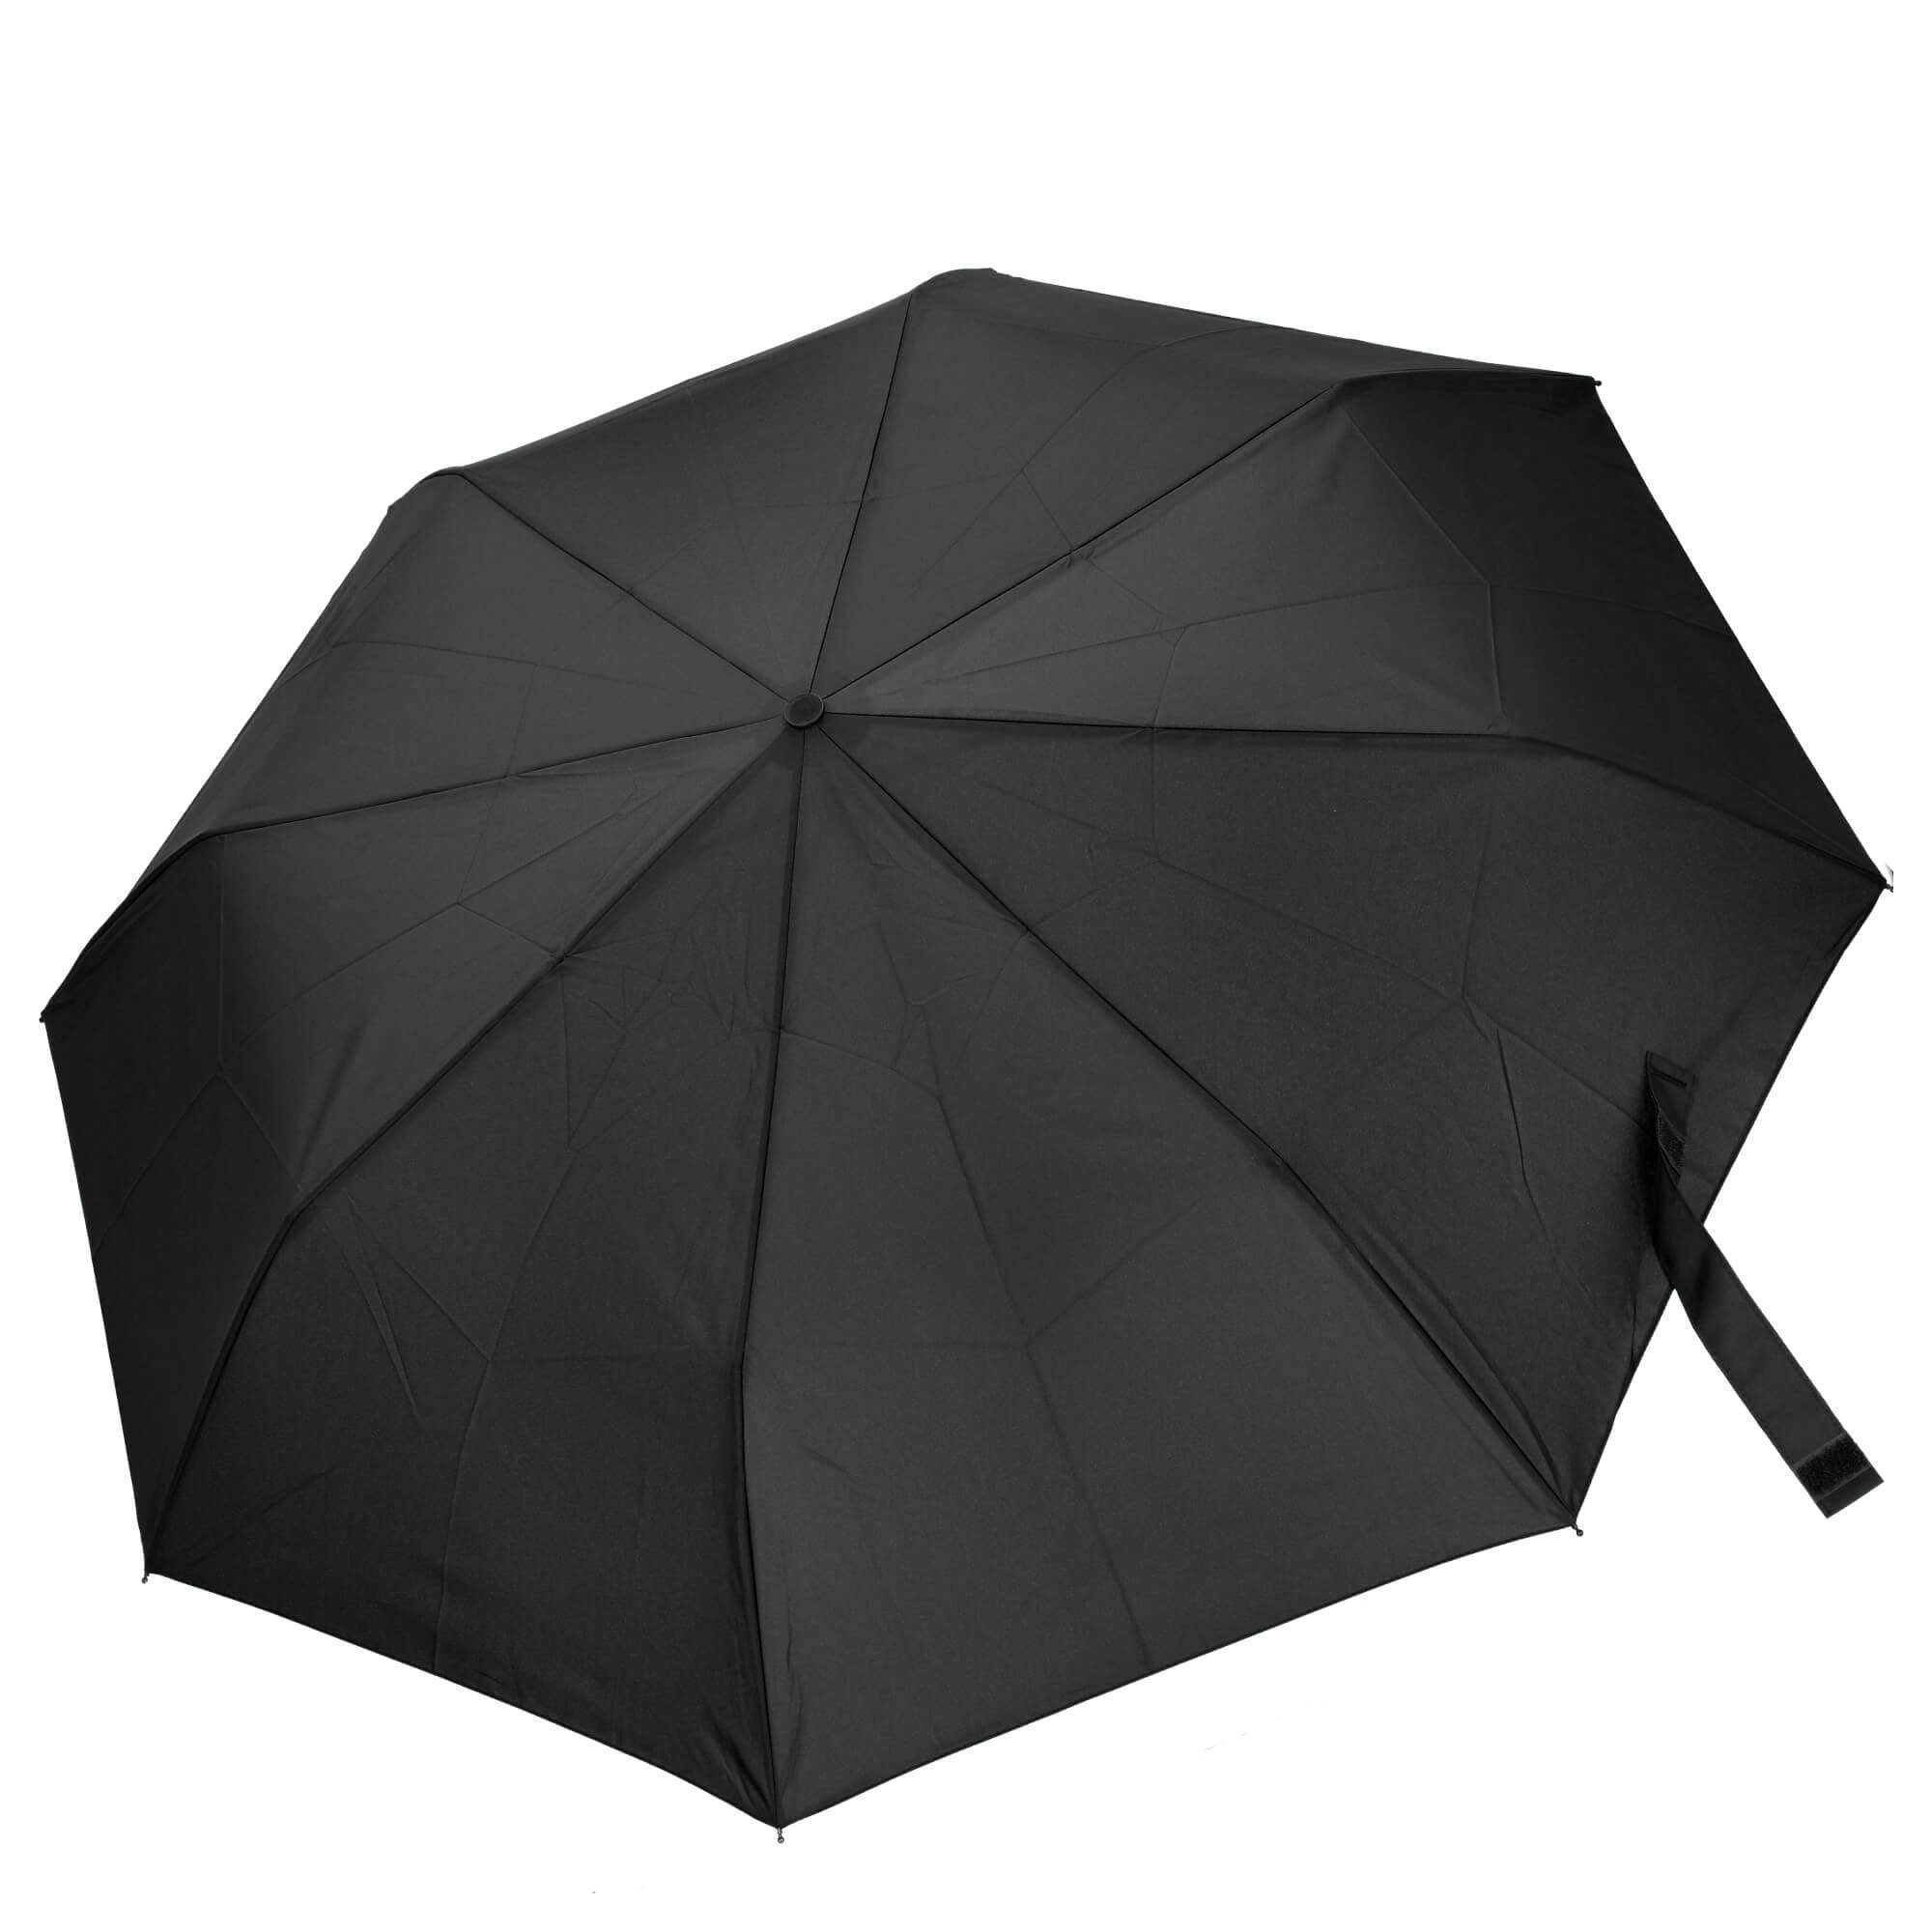 THE BRIDGE Taschenregenschirm Ombrelli - Regenschirm 91 cm black